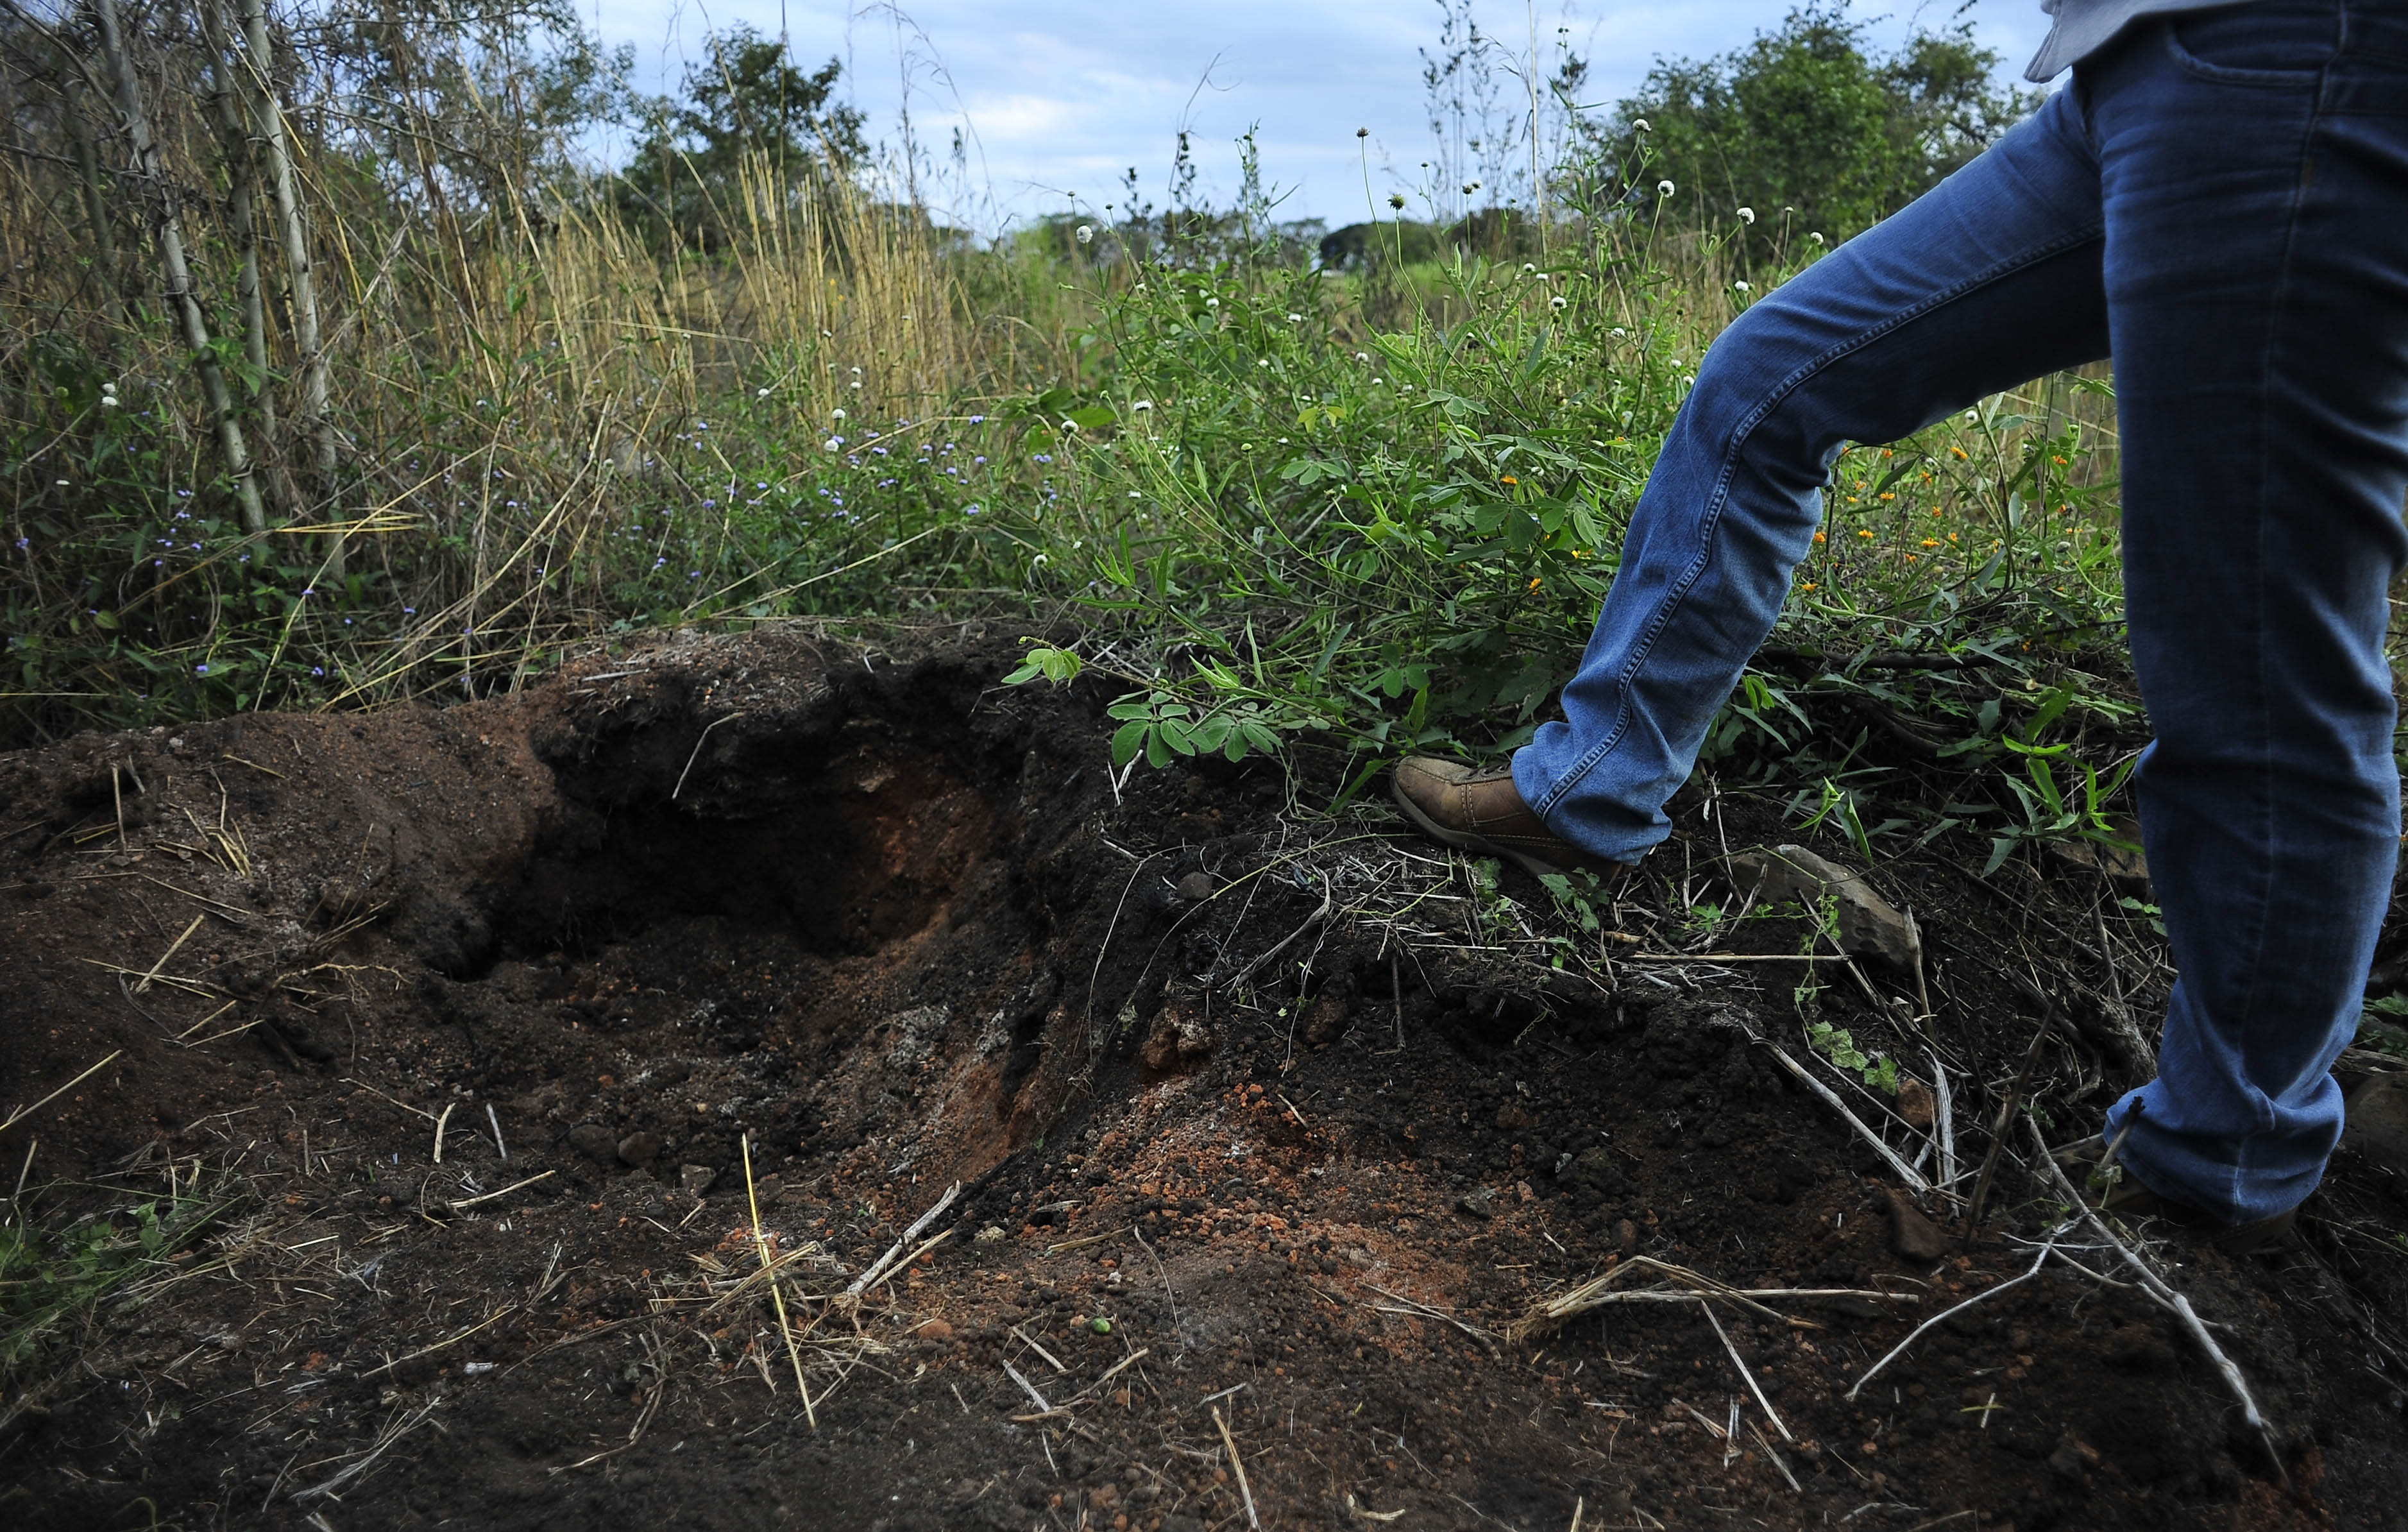  Se impuso la evidencia: restos humanos en fosas de Veracruz